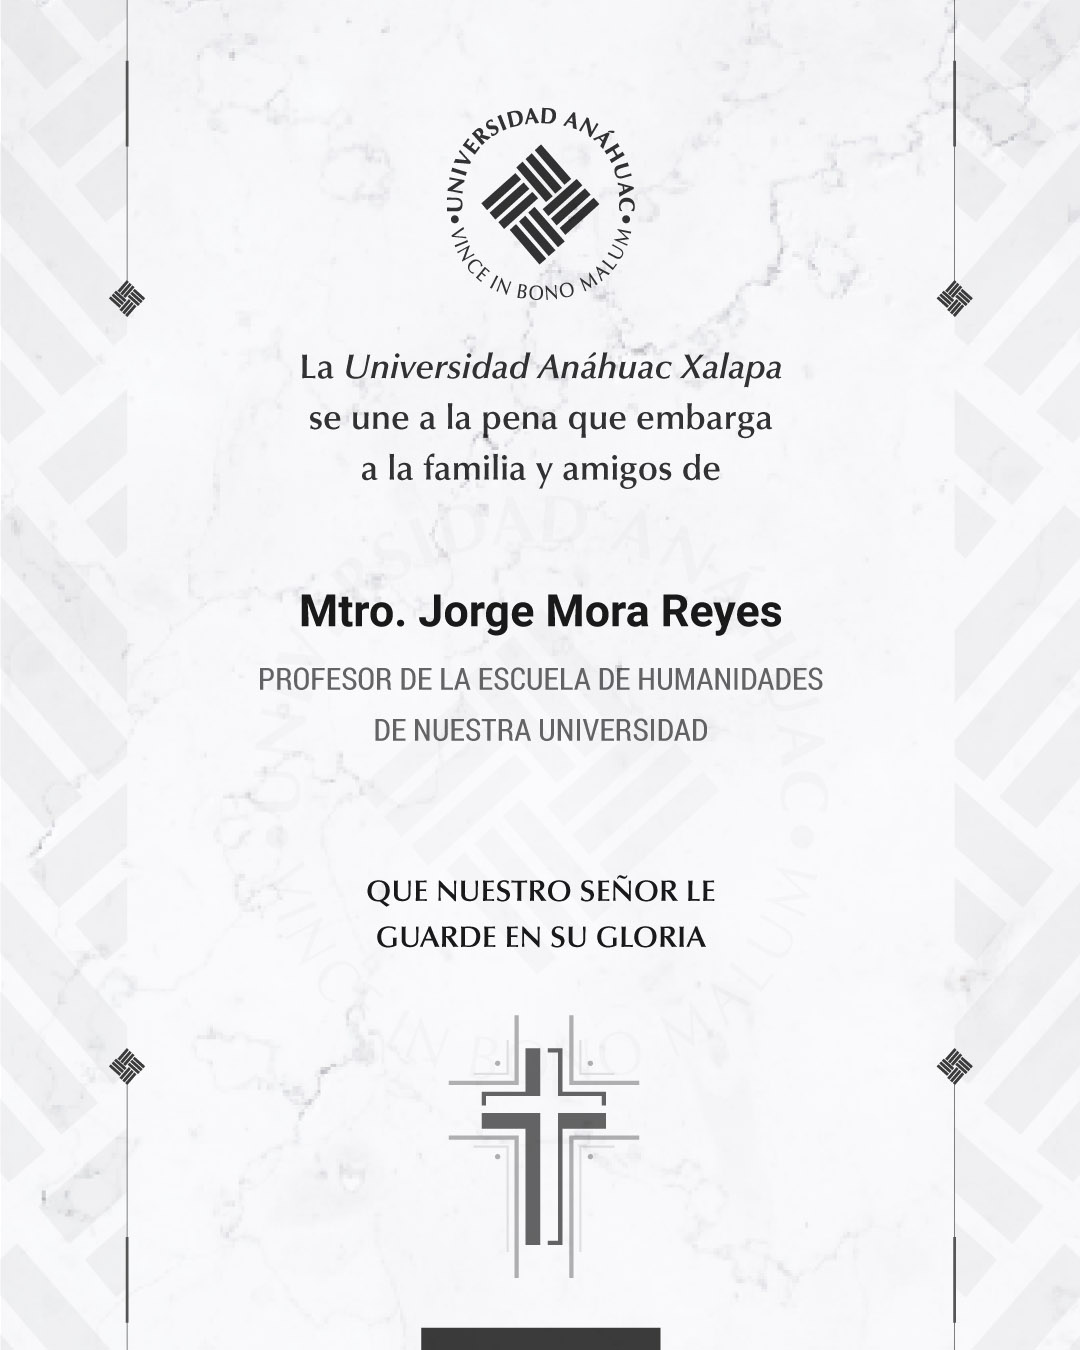 13 / 18 - Mtro. Jorge Mora Reyes